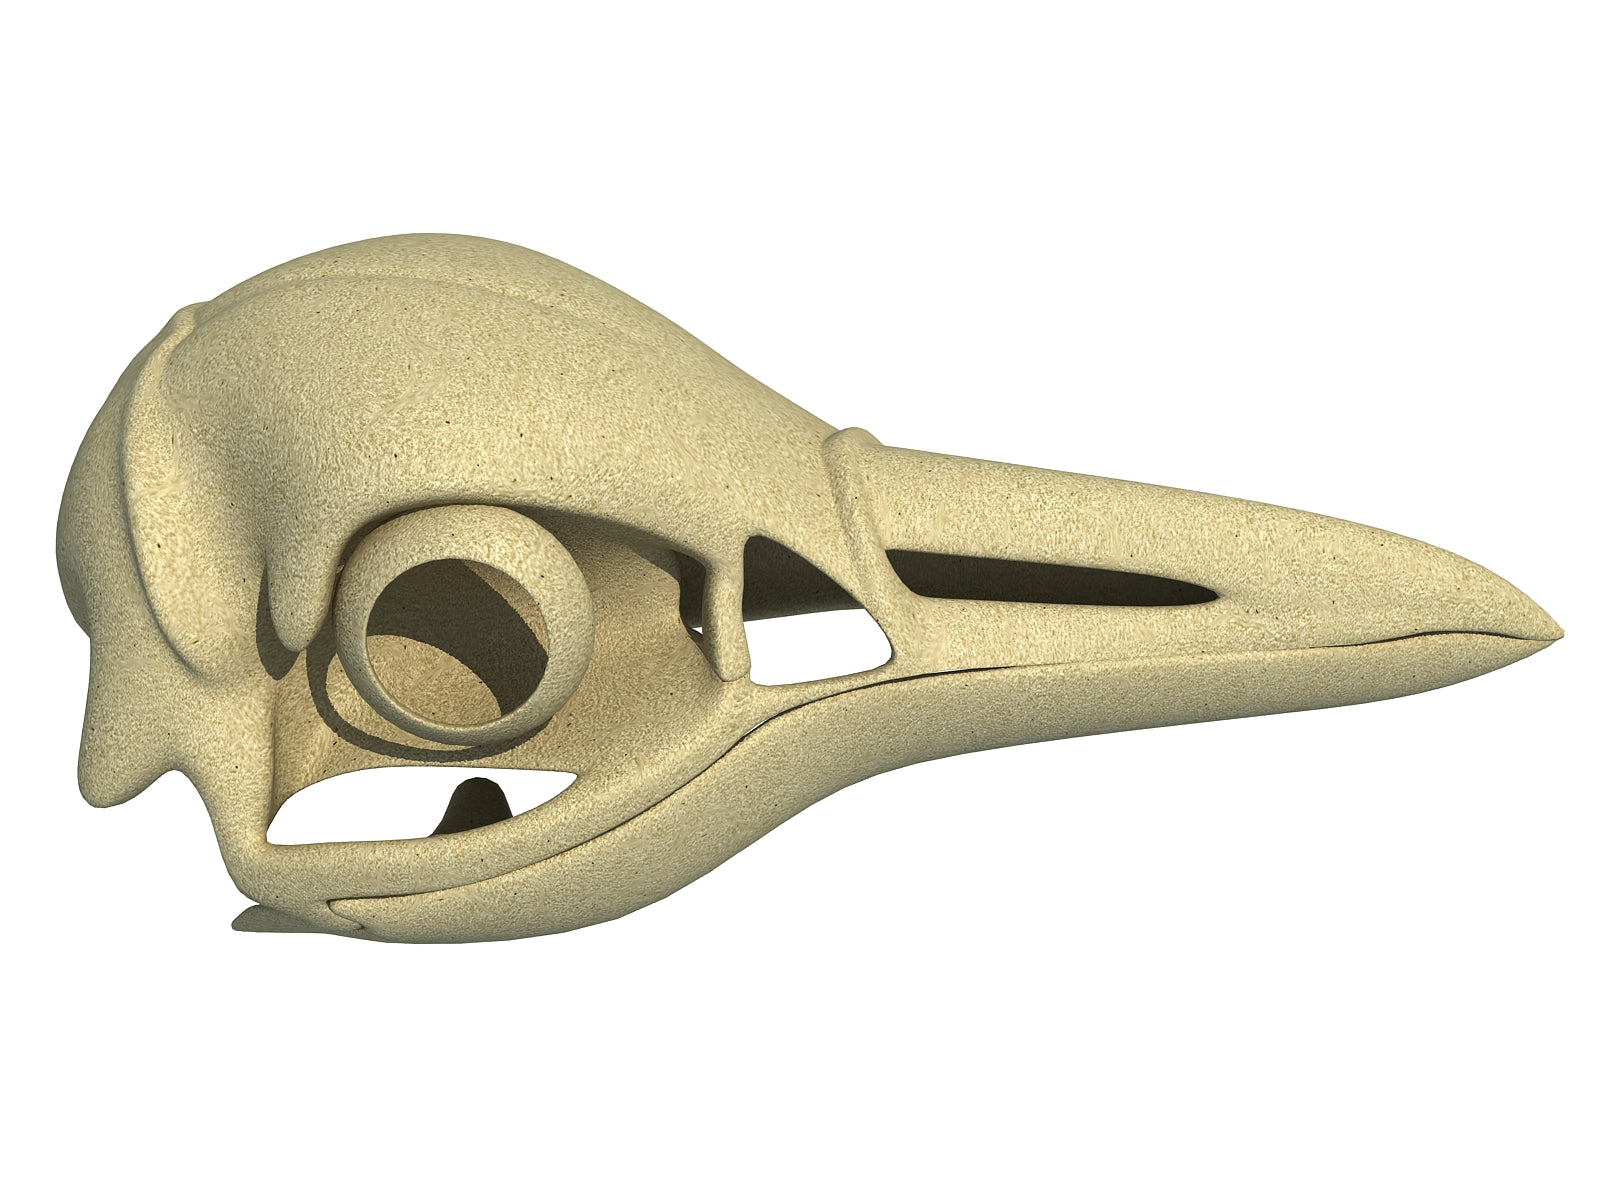 Penguin Skull